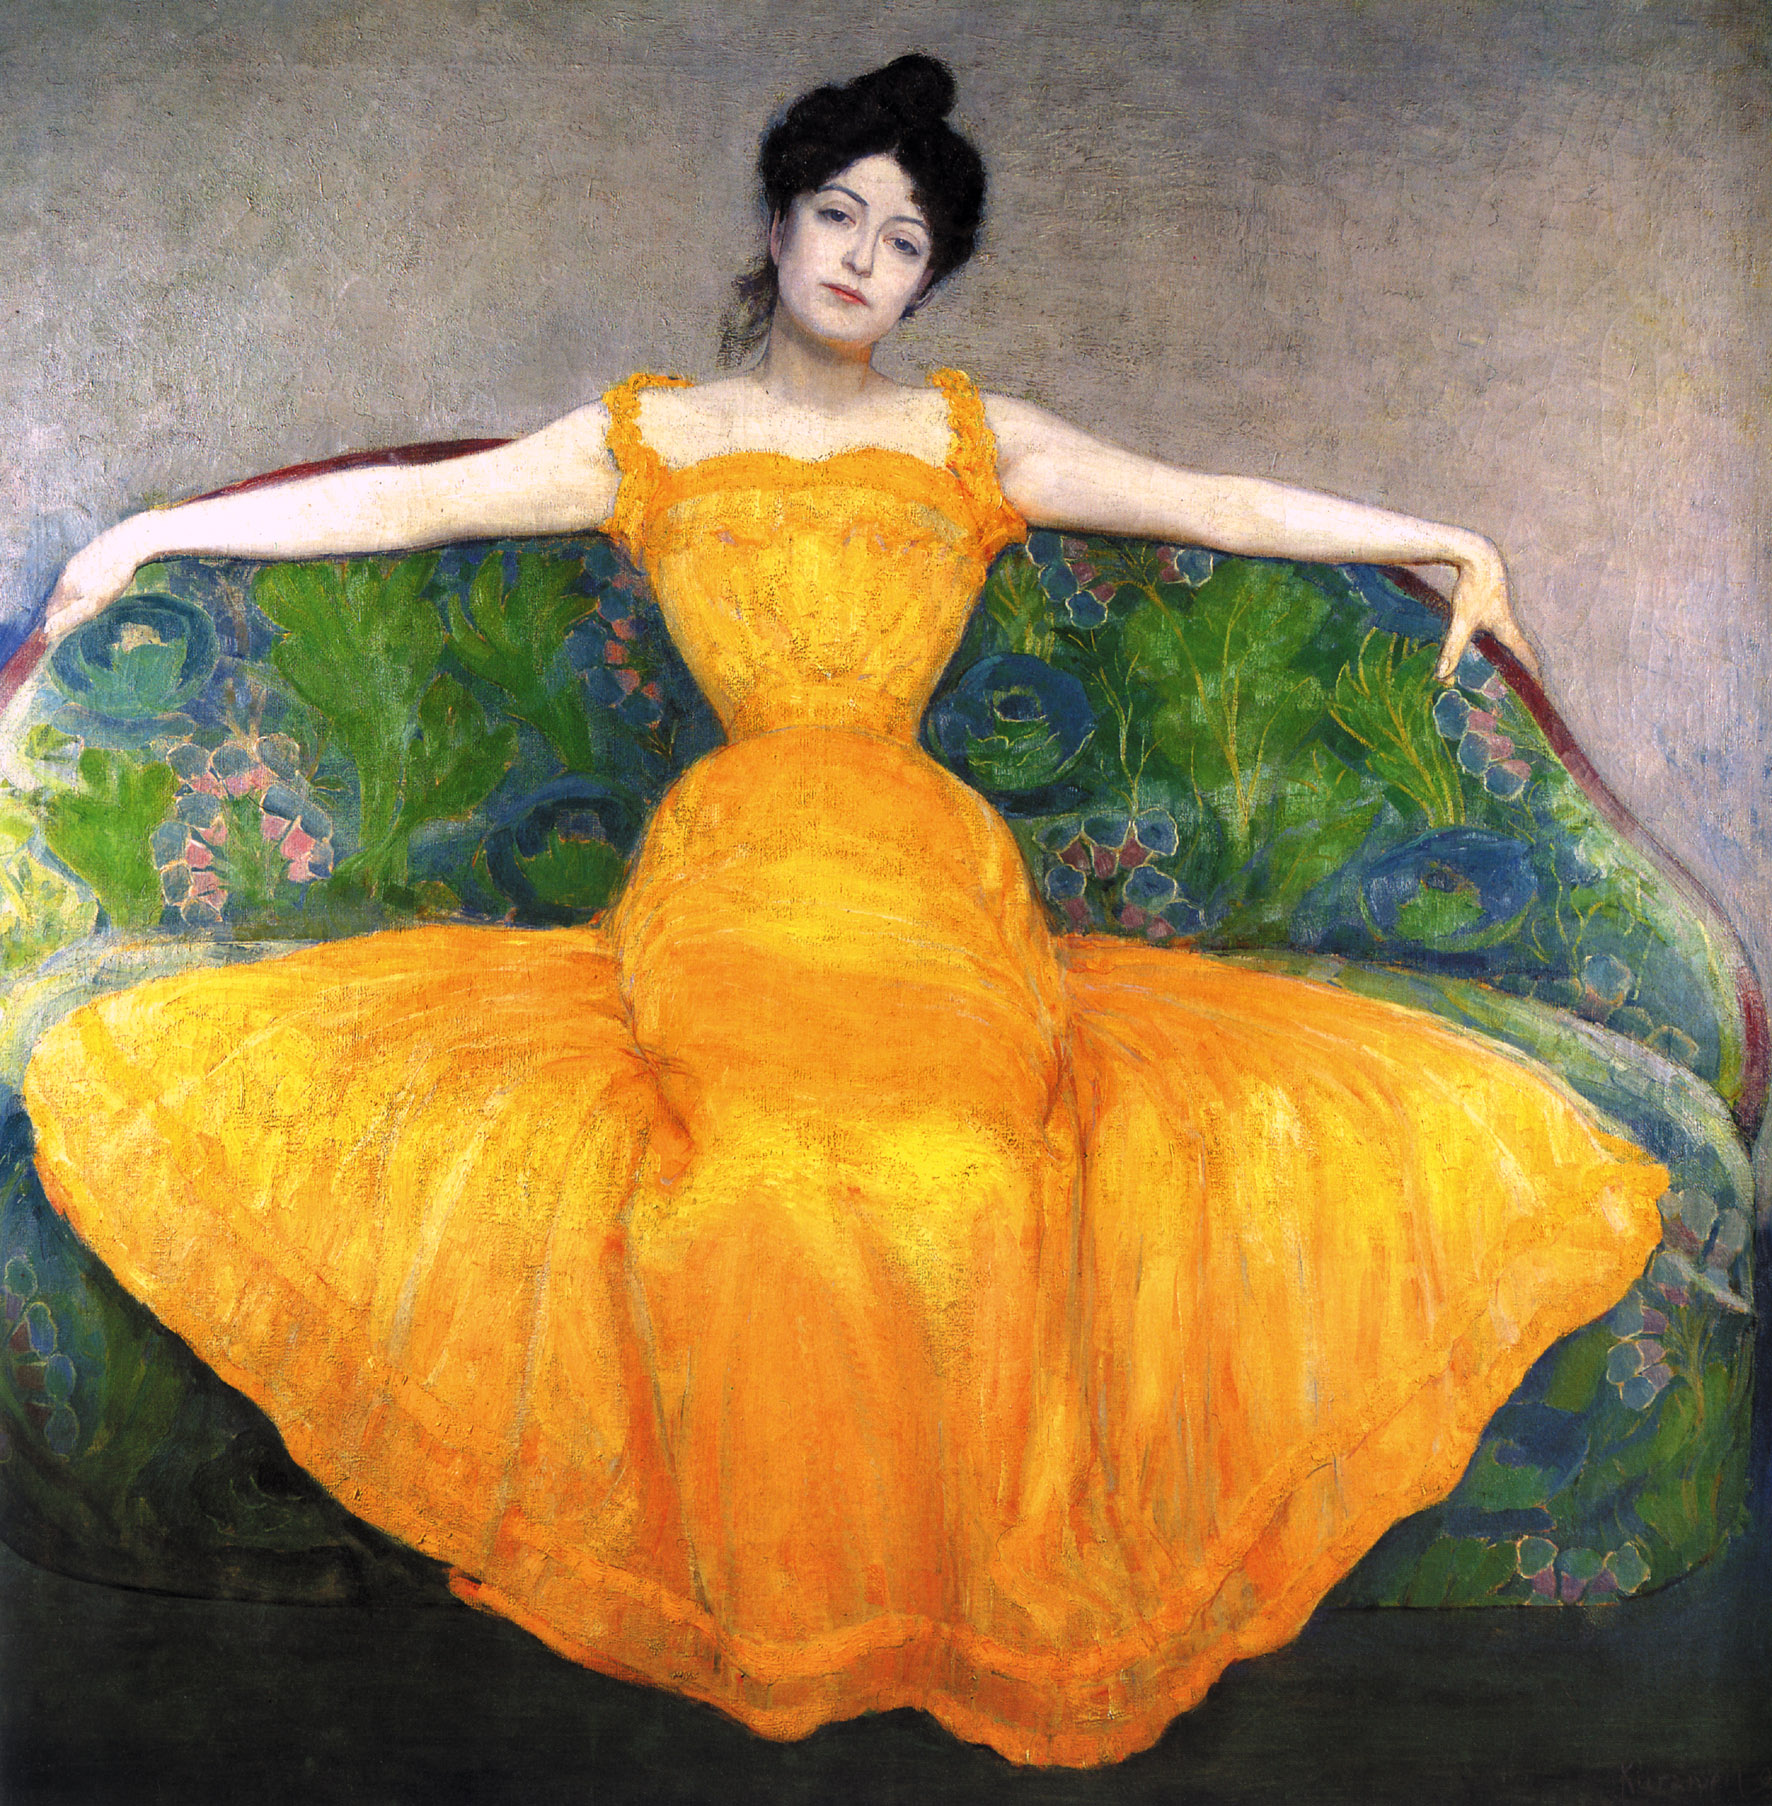 노란 드레스를 입고 있는 여자(Woman in Yellow) by Max Kurzweil - 1899 